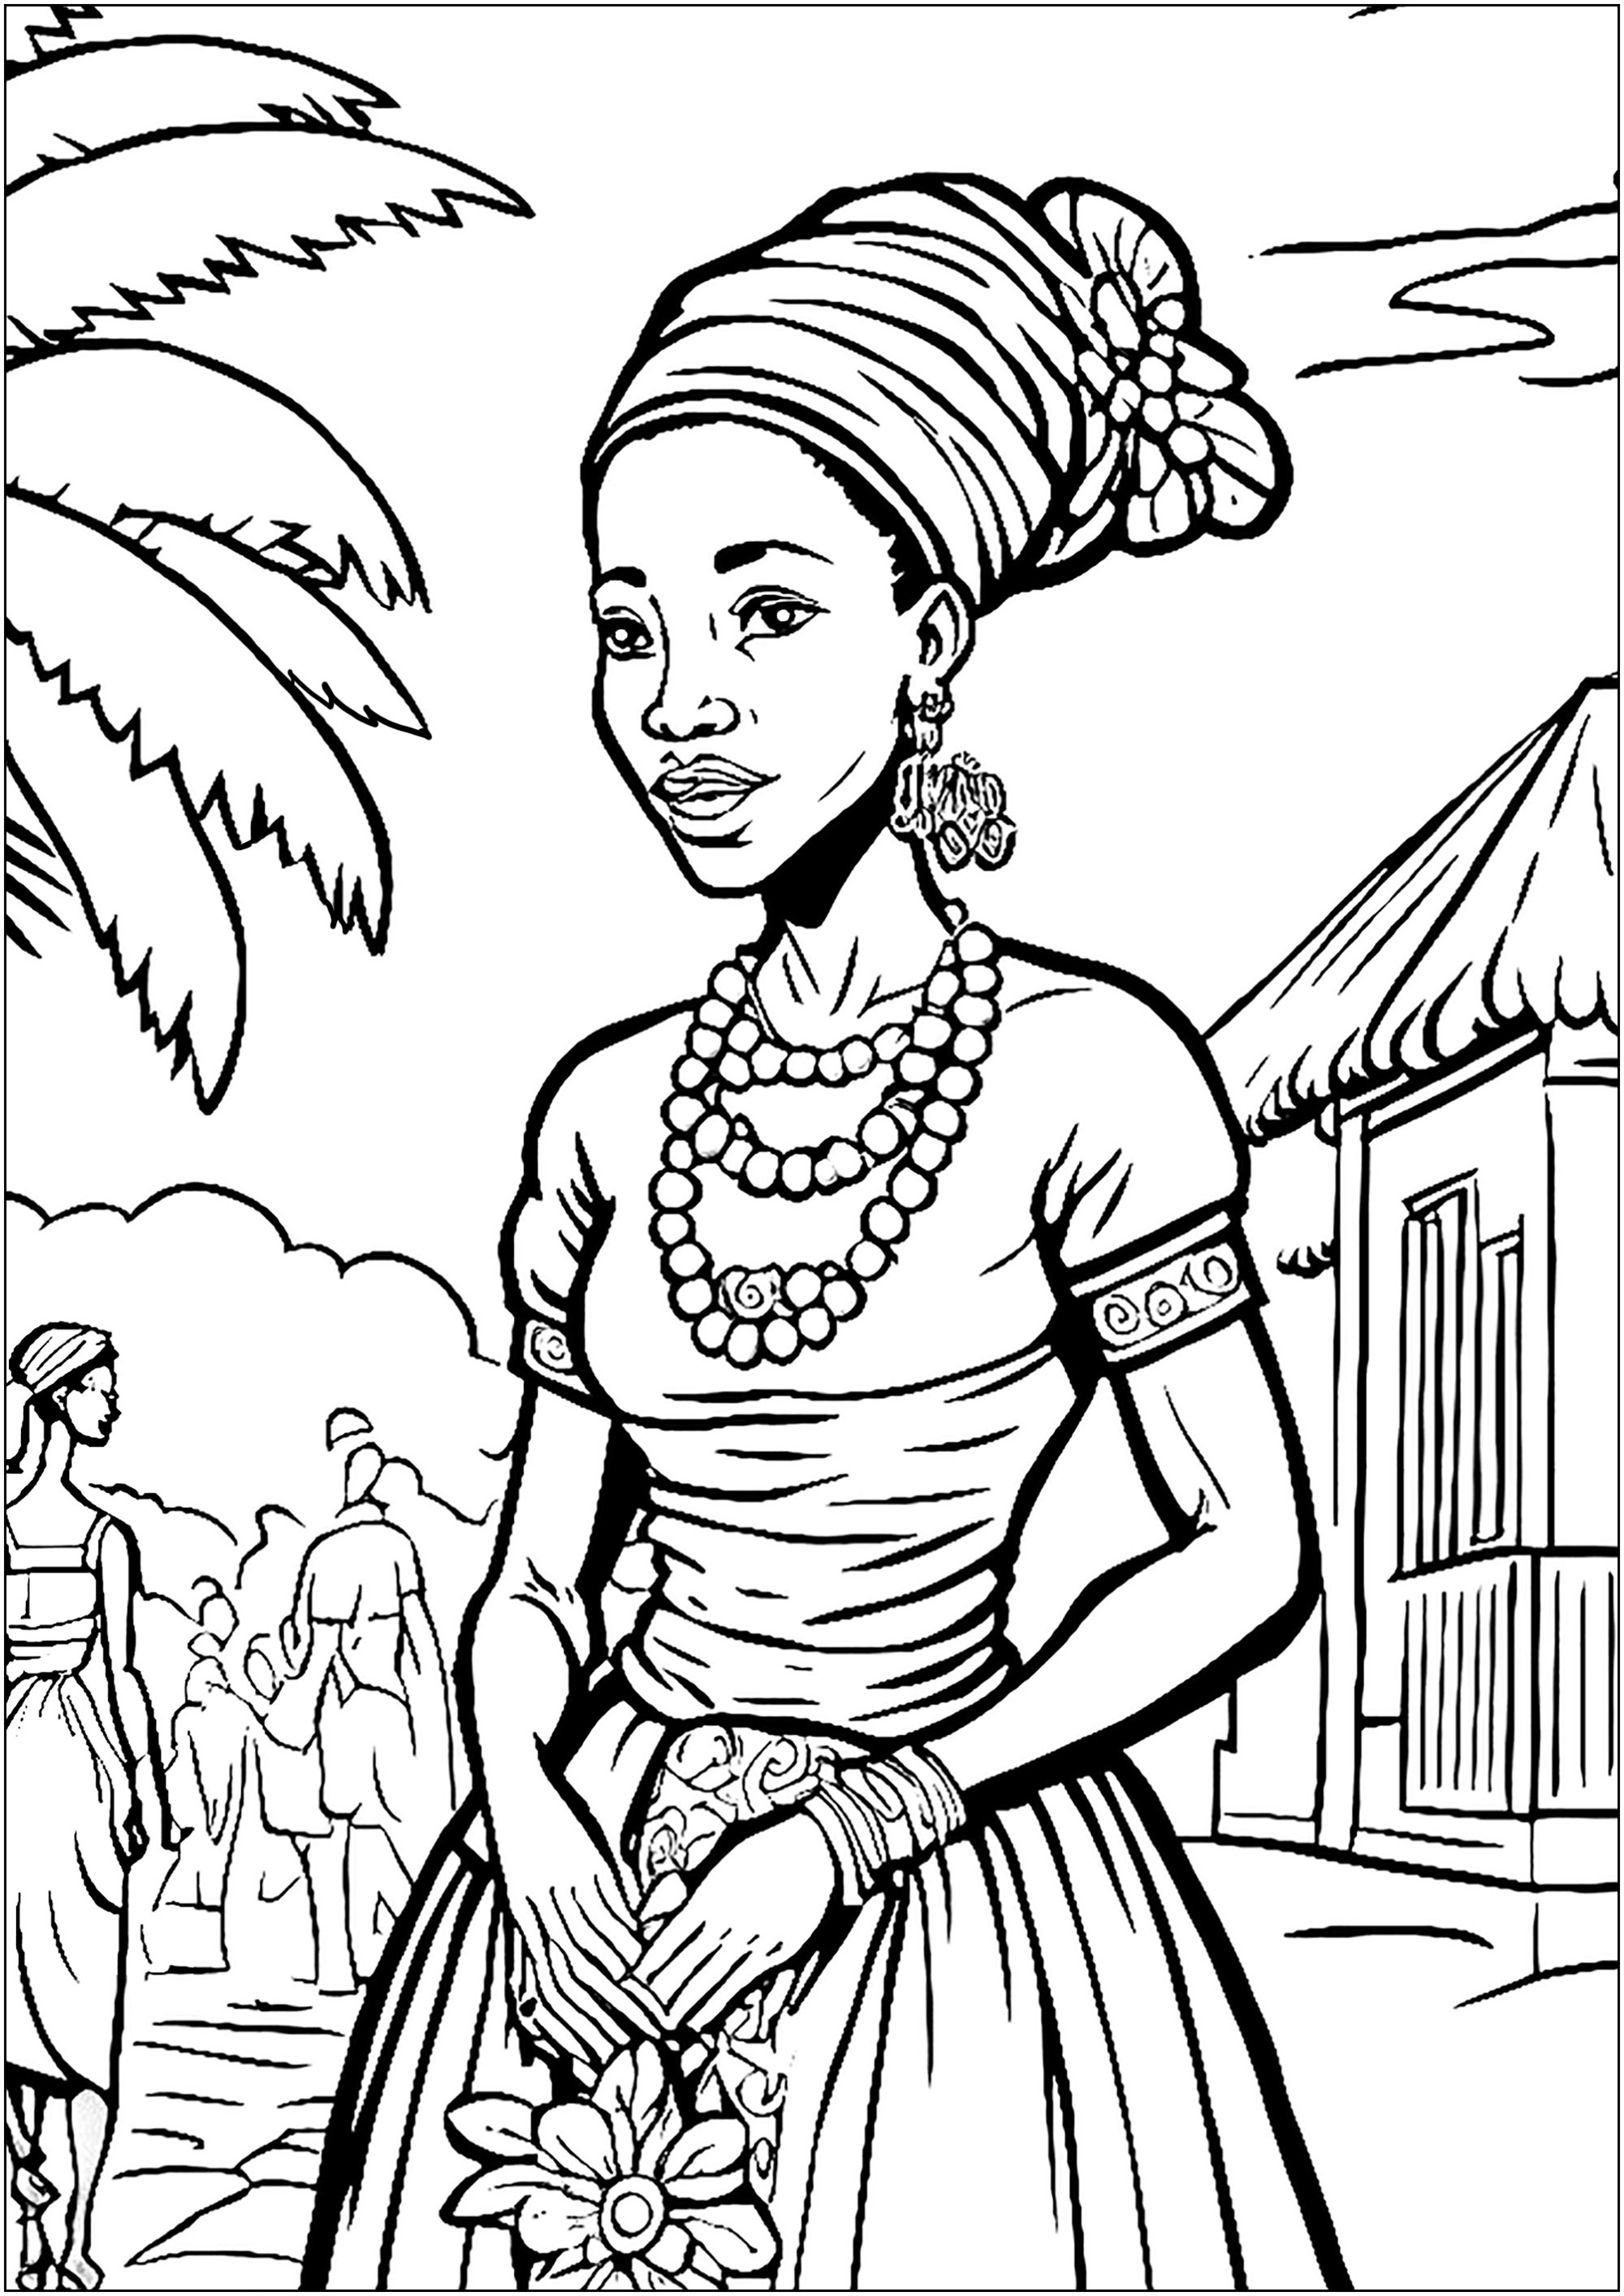 Mulher africana em roupa típica, numa bela aldeia